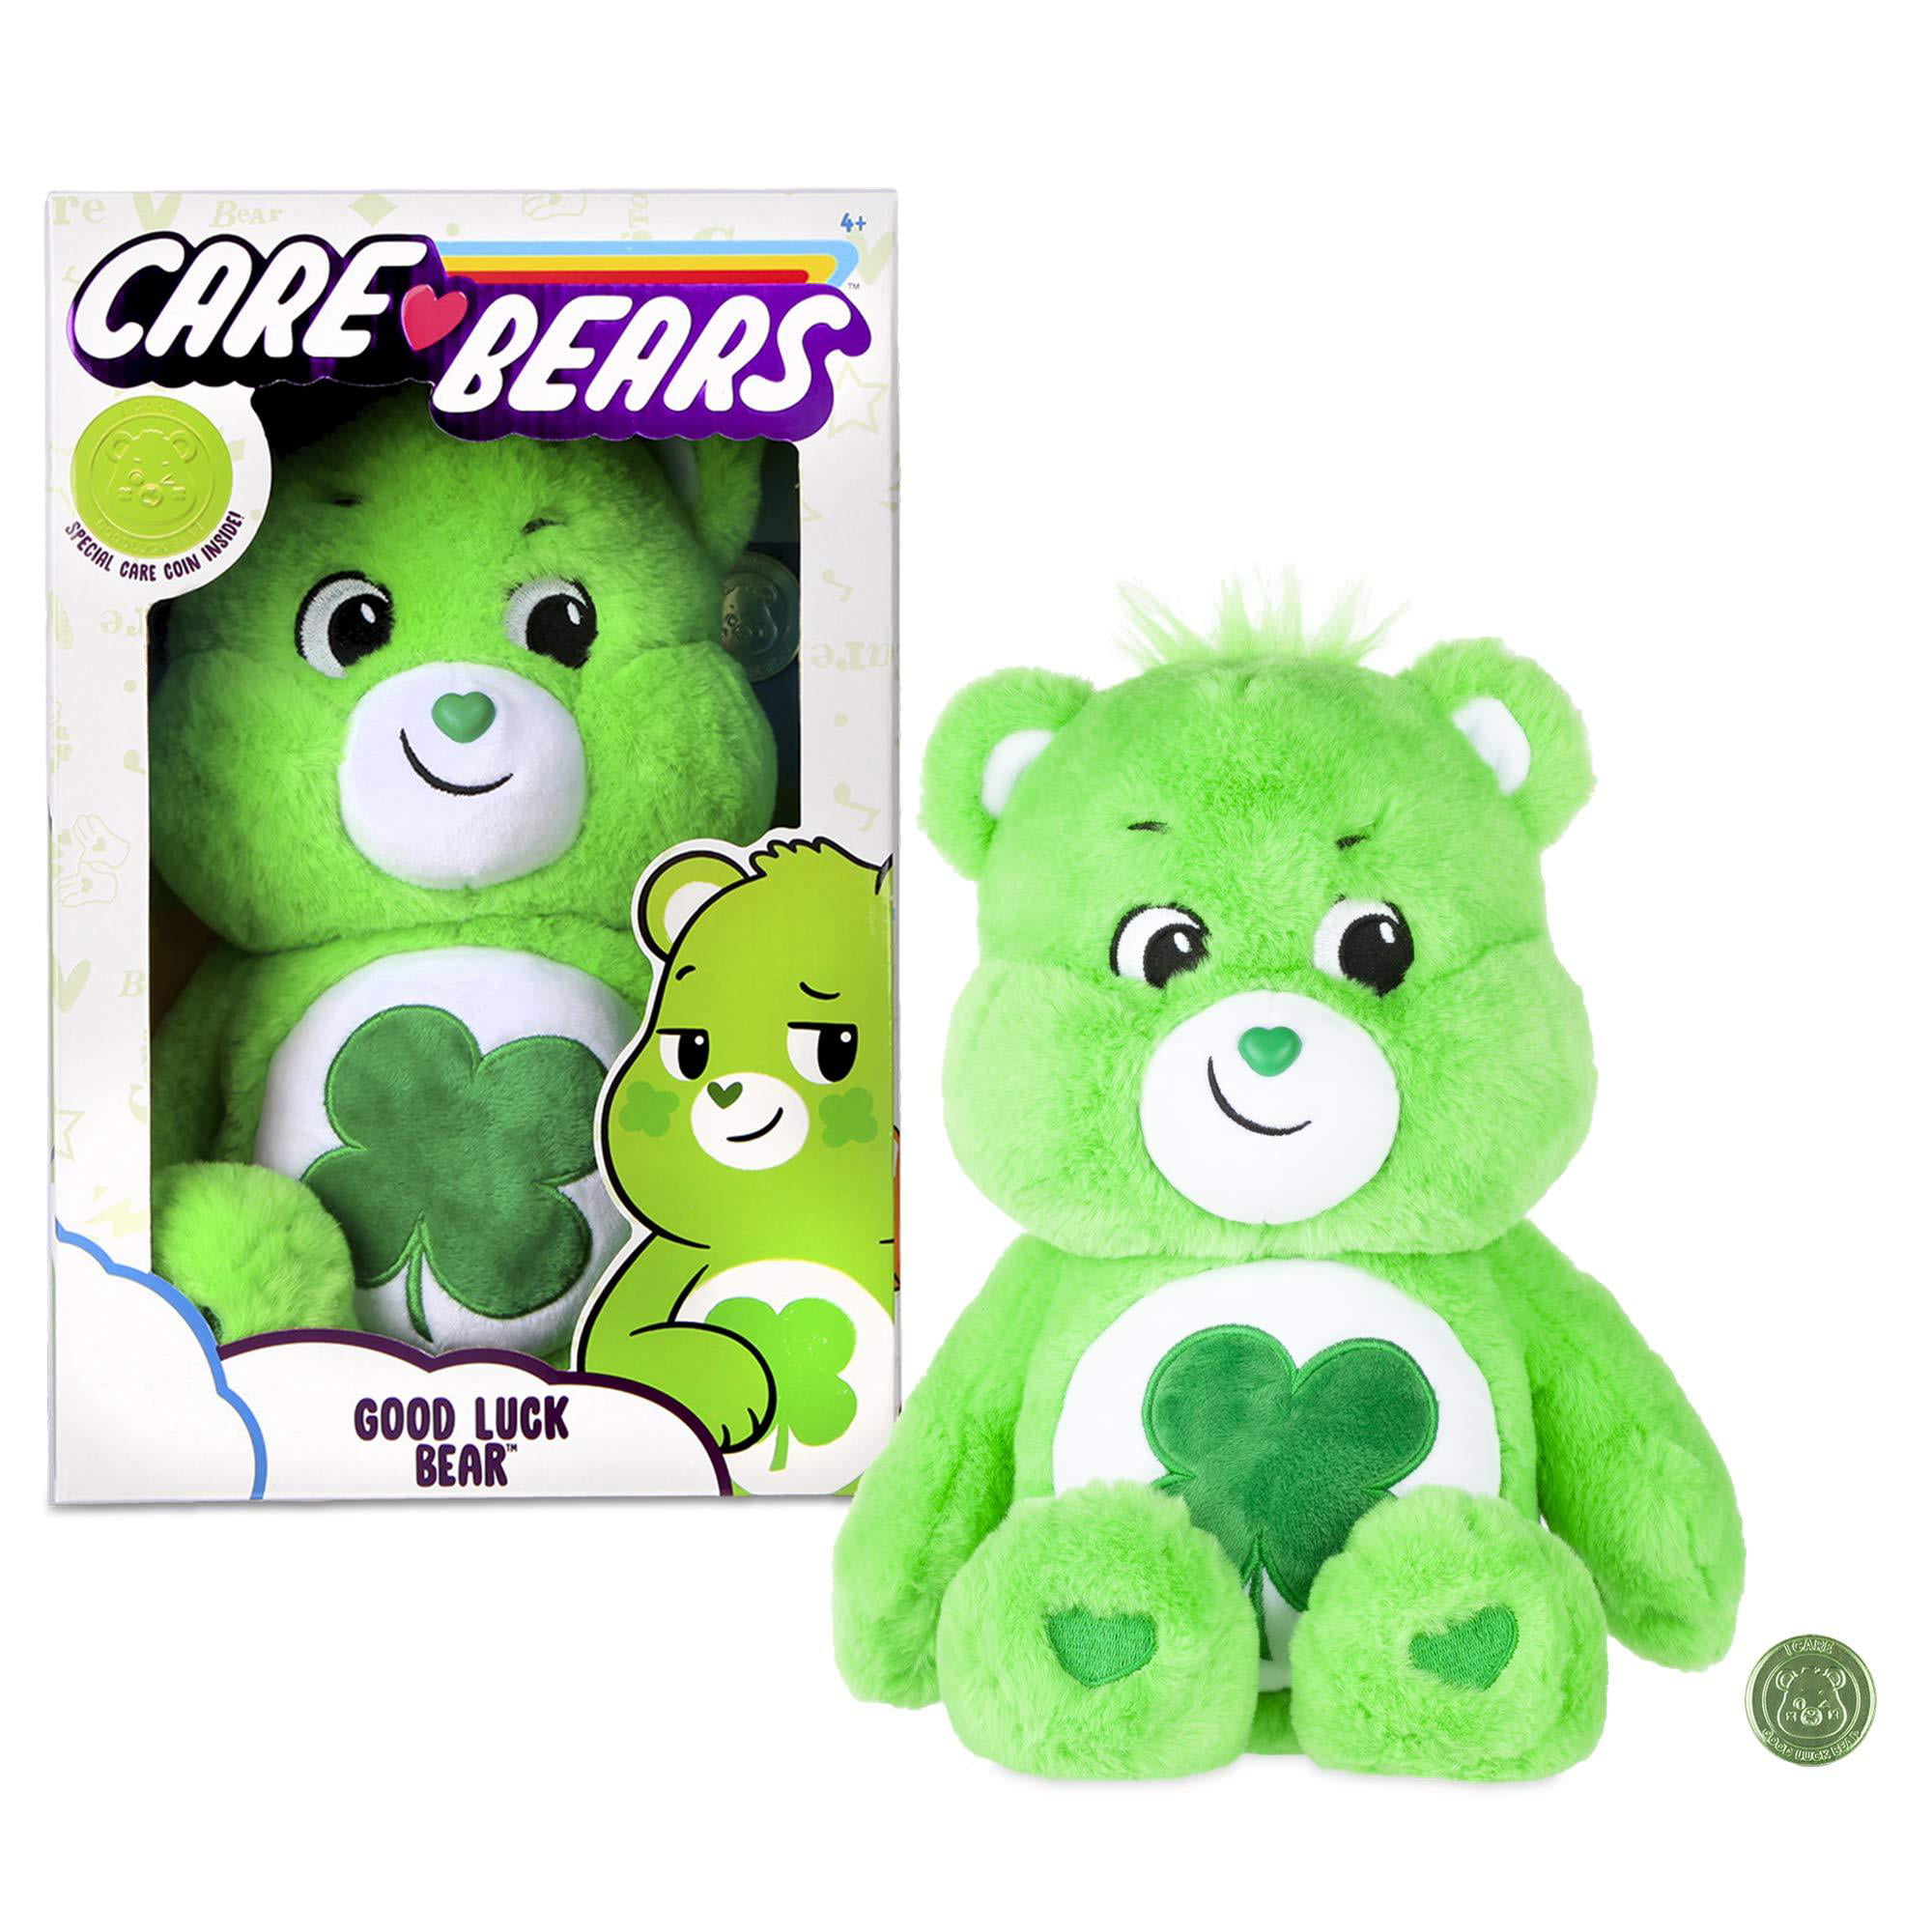 Care Bears   Care Bears Good Luck Bear Plush 13" 